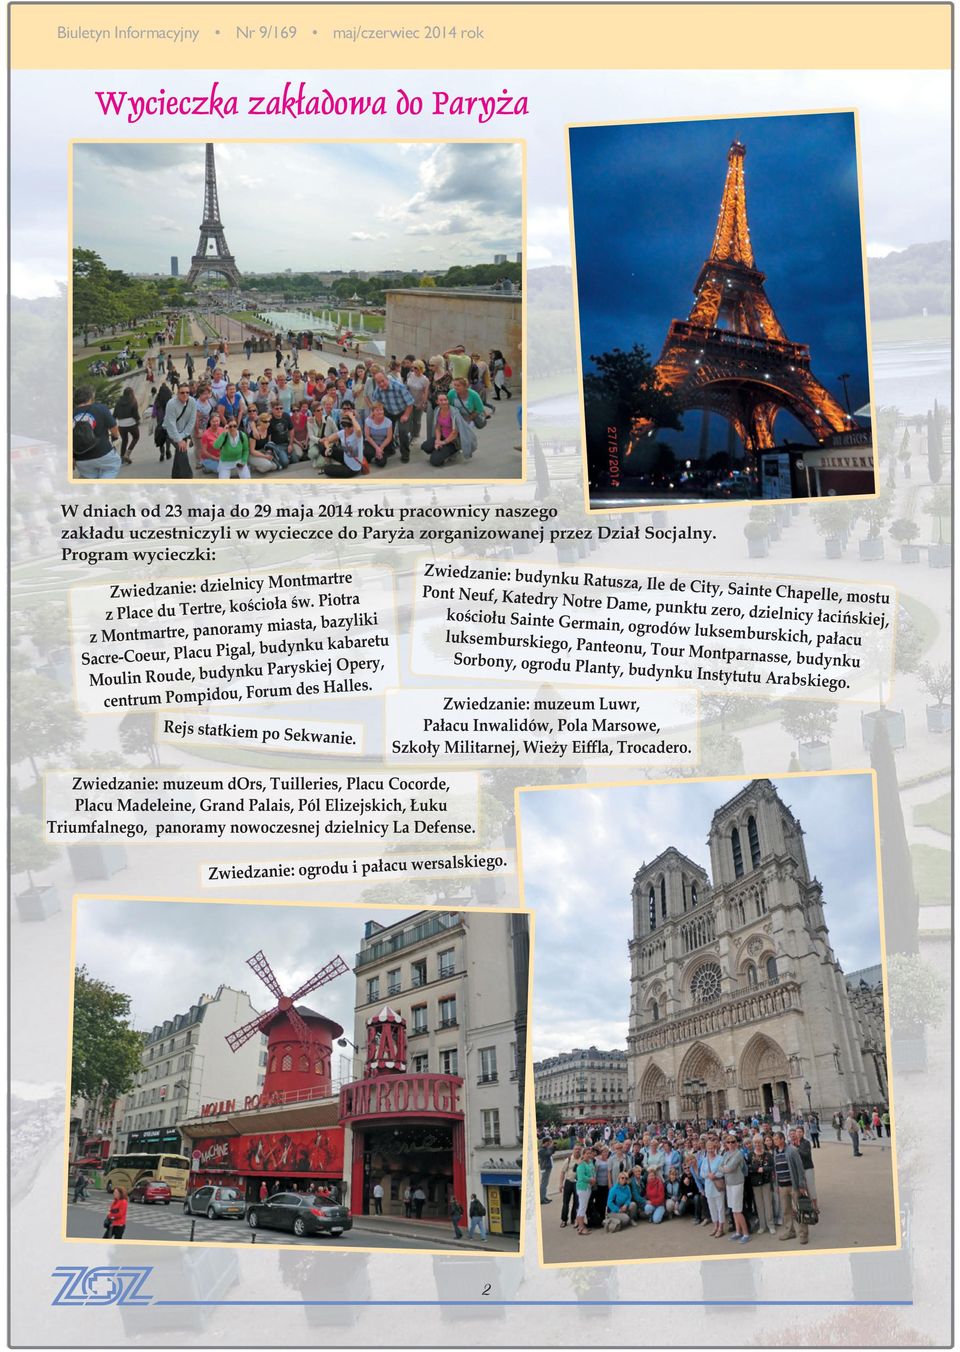 Piotra z Montmartre, panoramy miasta, bazyliki Sacre-Coeur, Placu Pigal, budynku kabaretu Moulin Roude, budynku Paryskiej Opery, centrum Pompidou, Forum des Halles. Rejs statkiem po Sekwanie.